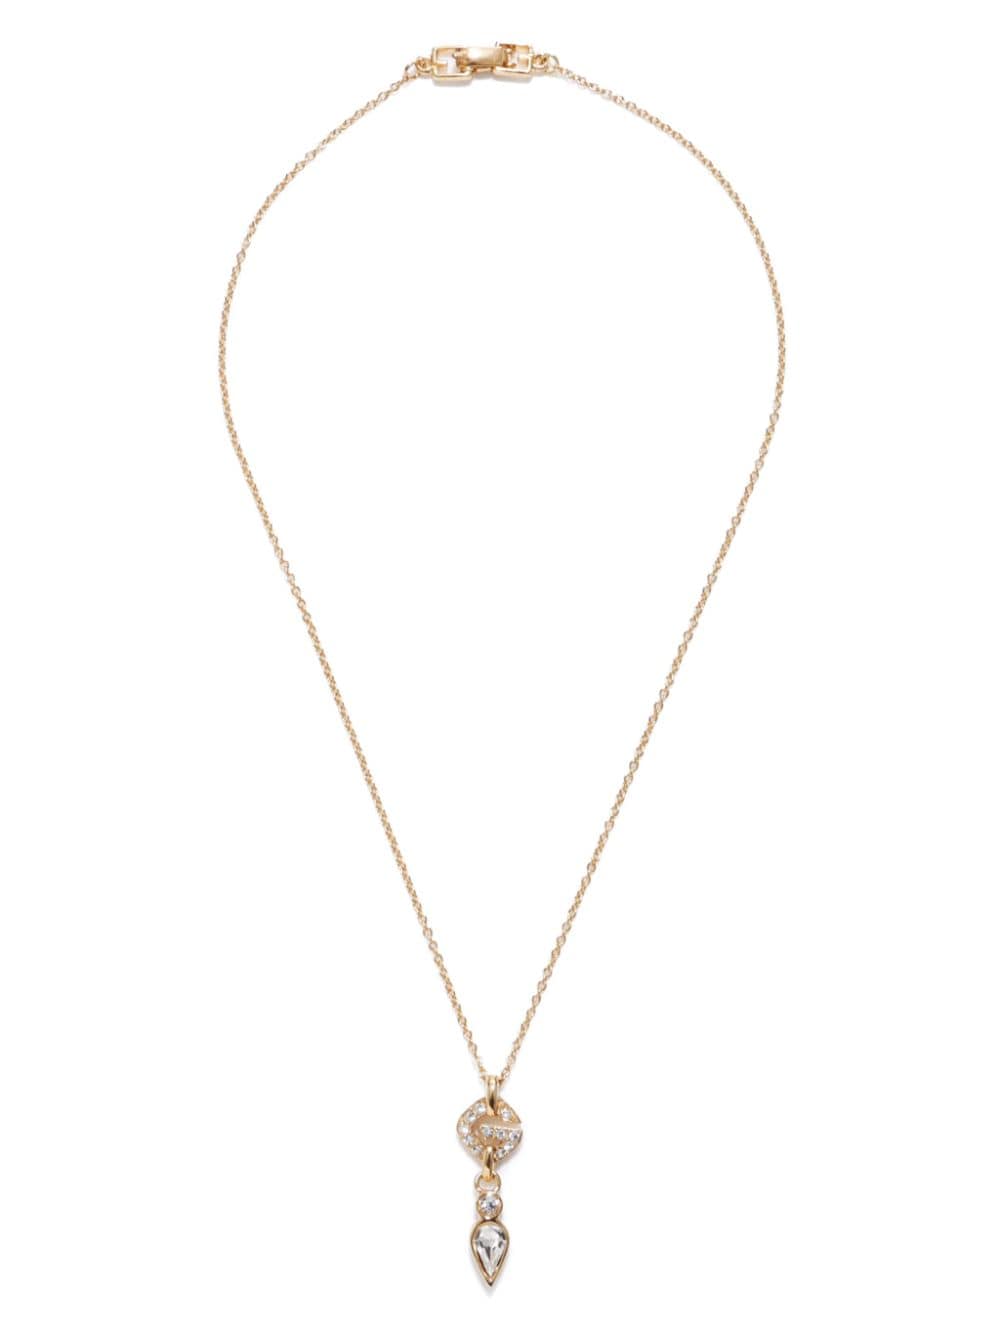 rhinestone-embellished chain necklace